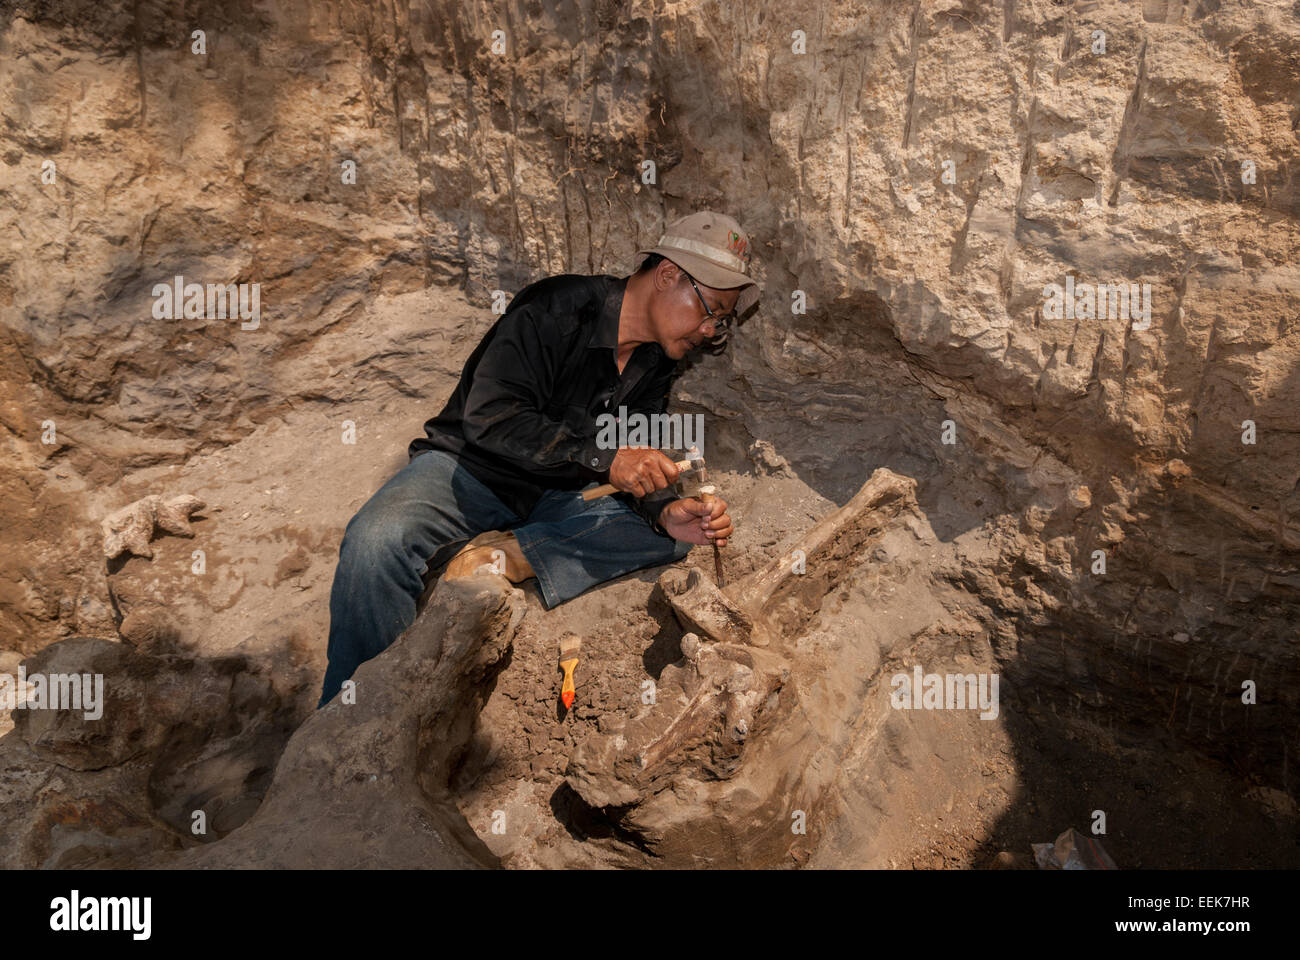 Un membre de l'équipe de recherche sur les vertébrés de l'Agence géologique indonésienne travaille sur le site d'excavation d'Elephas hysudrindicus à Blora, en Indonésie. Banque D'Images